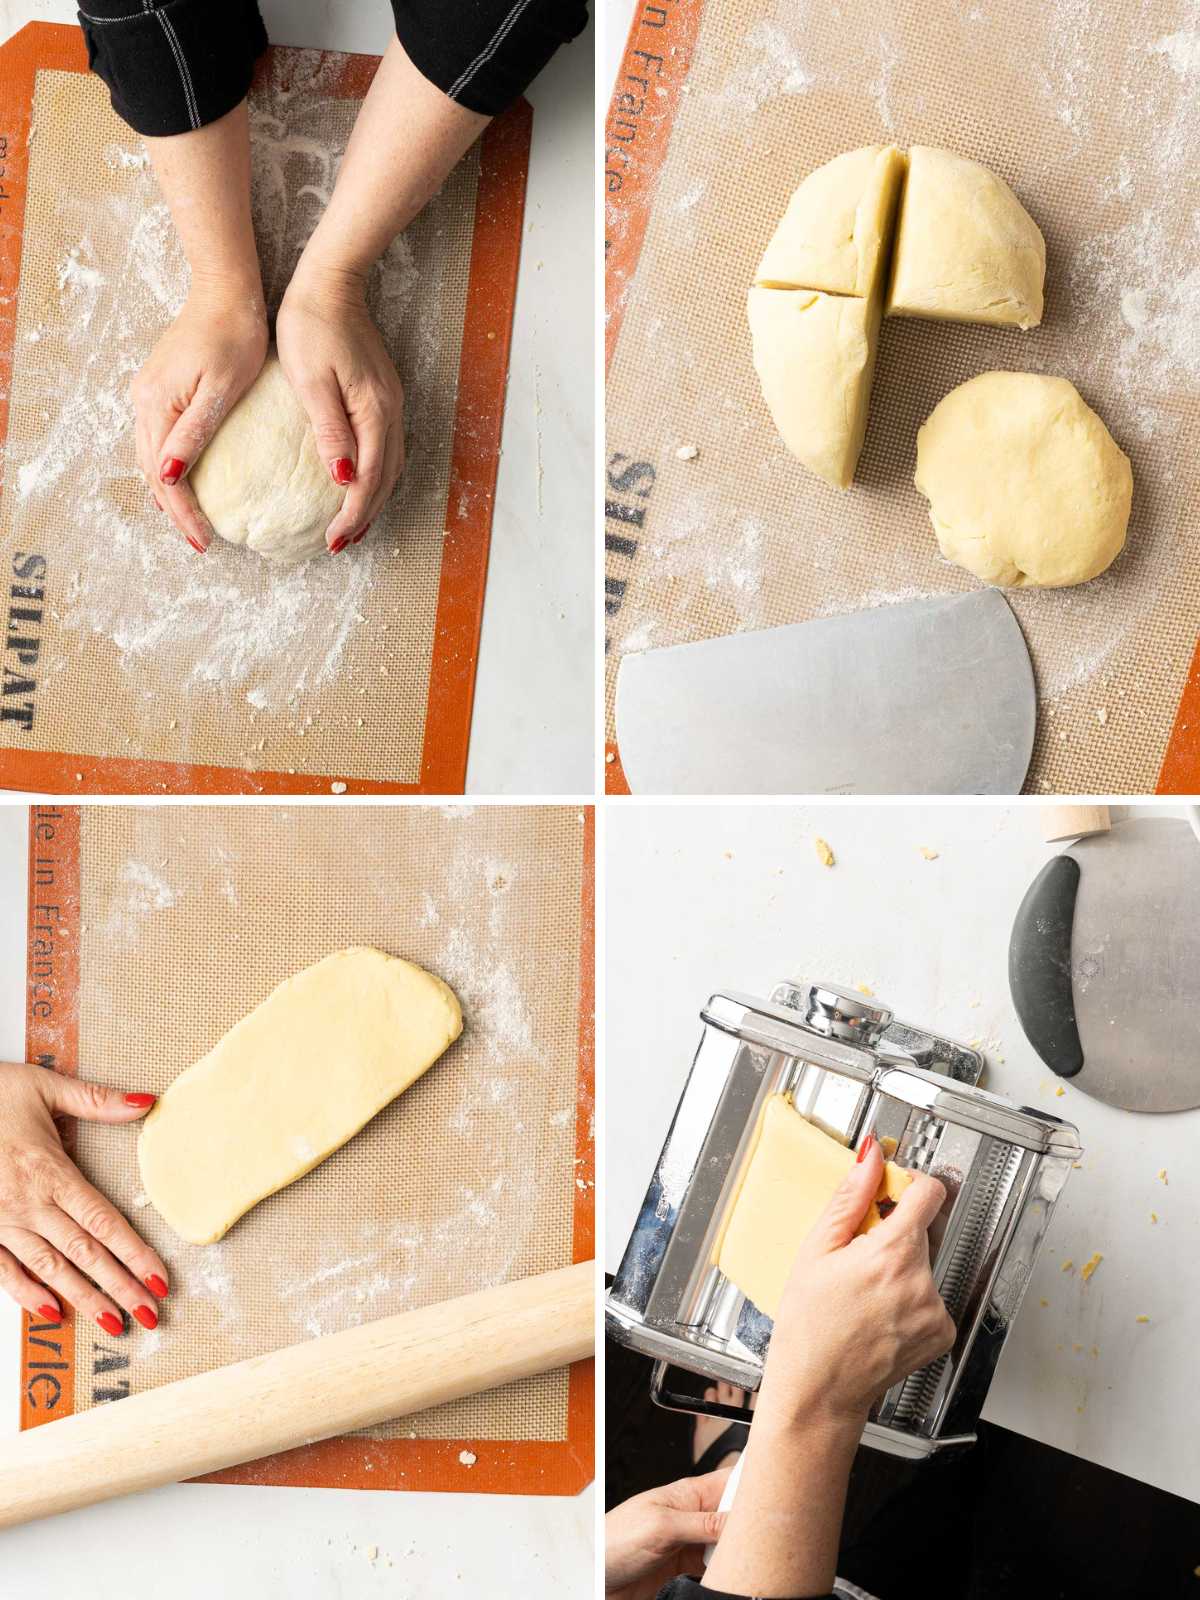 Making pasta dough.